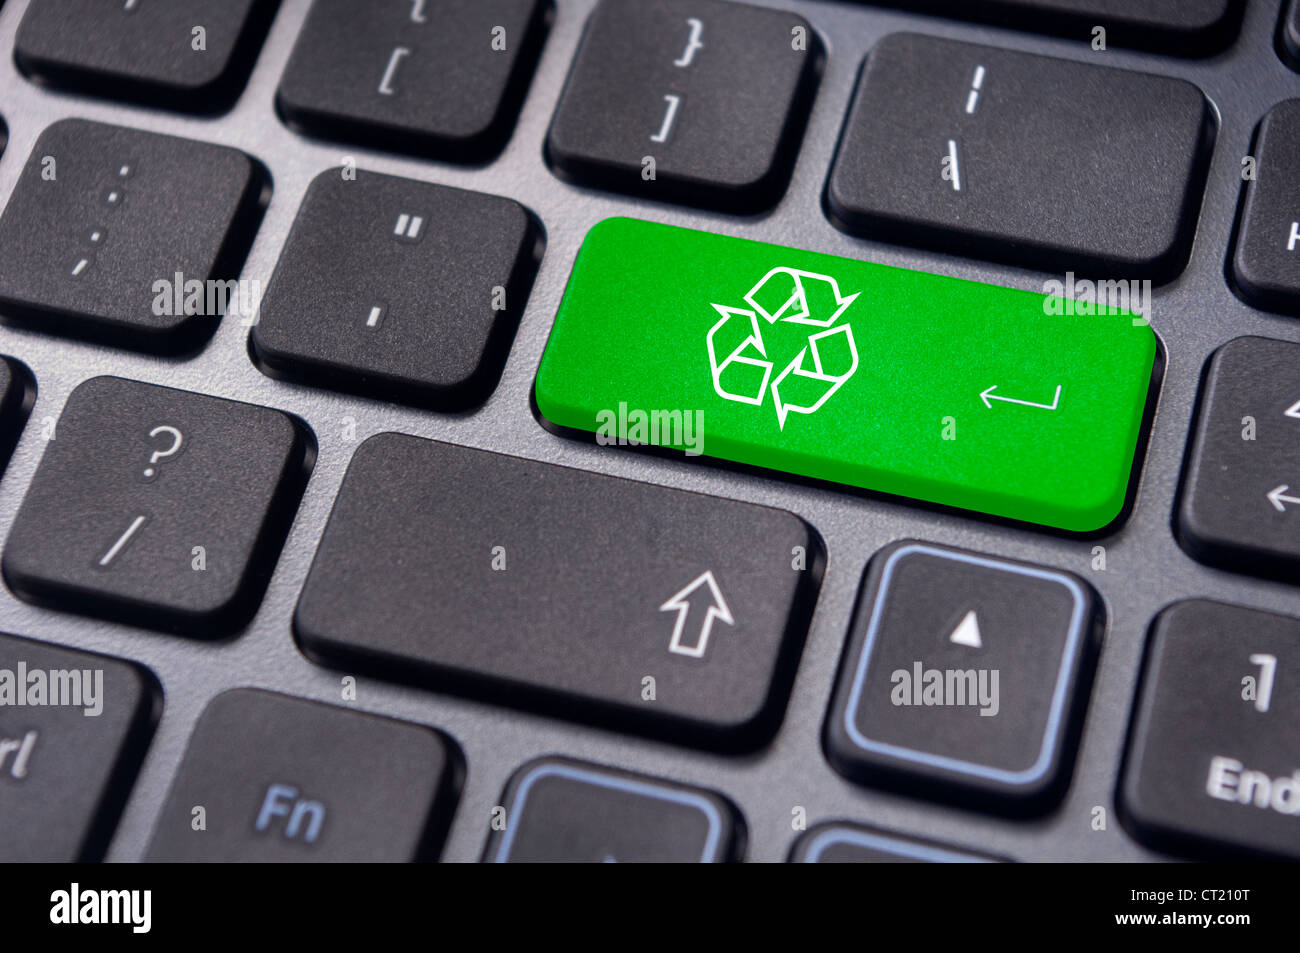 Concepts de recyclage, avec un message sur la touche Entrée du clavier. Banque D'Images